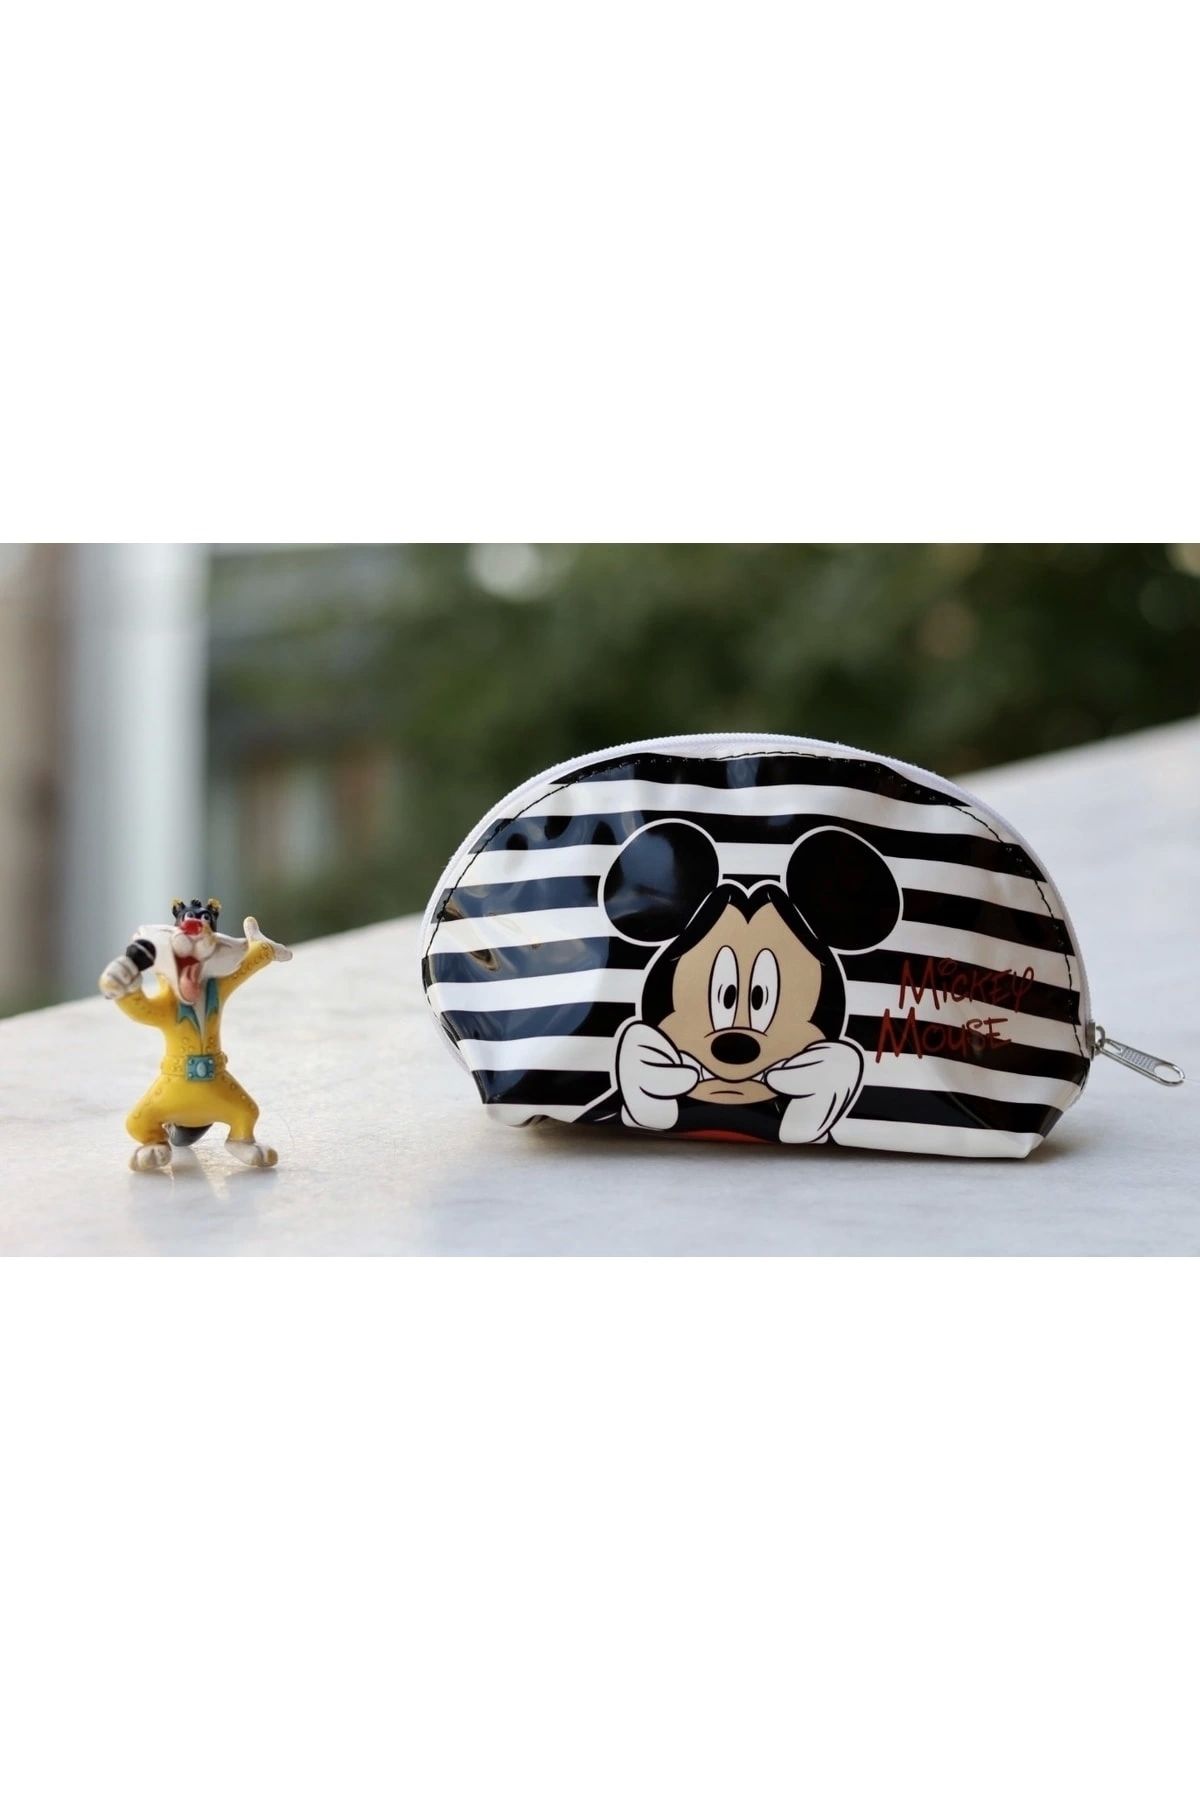 Şah-Mat Mickey Mouse Siyah Beyaz Makyaj ve Süs Çantası Şahmat-2020